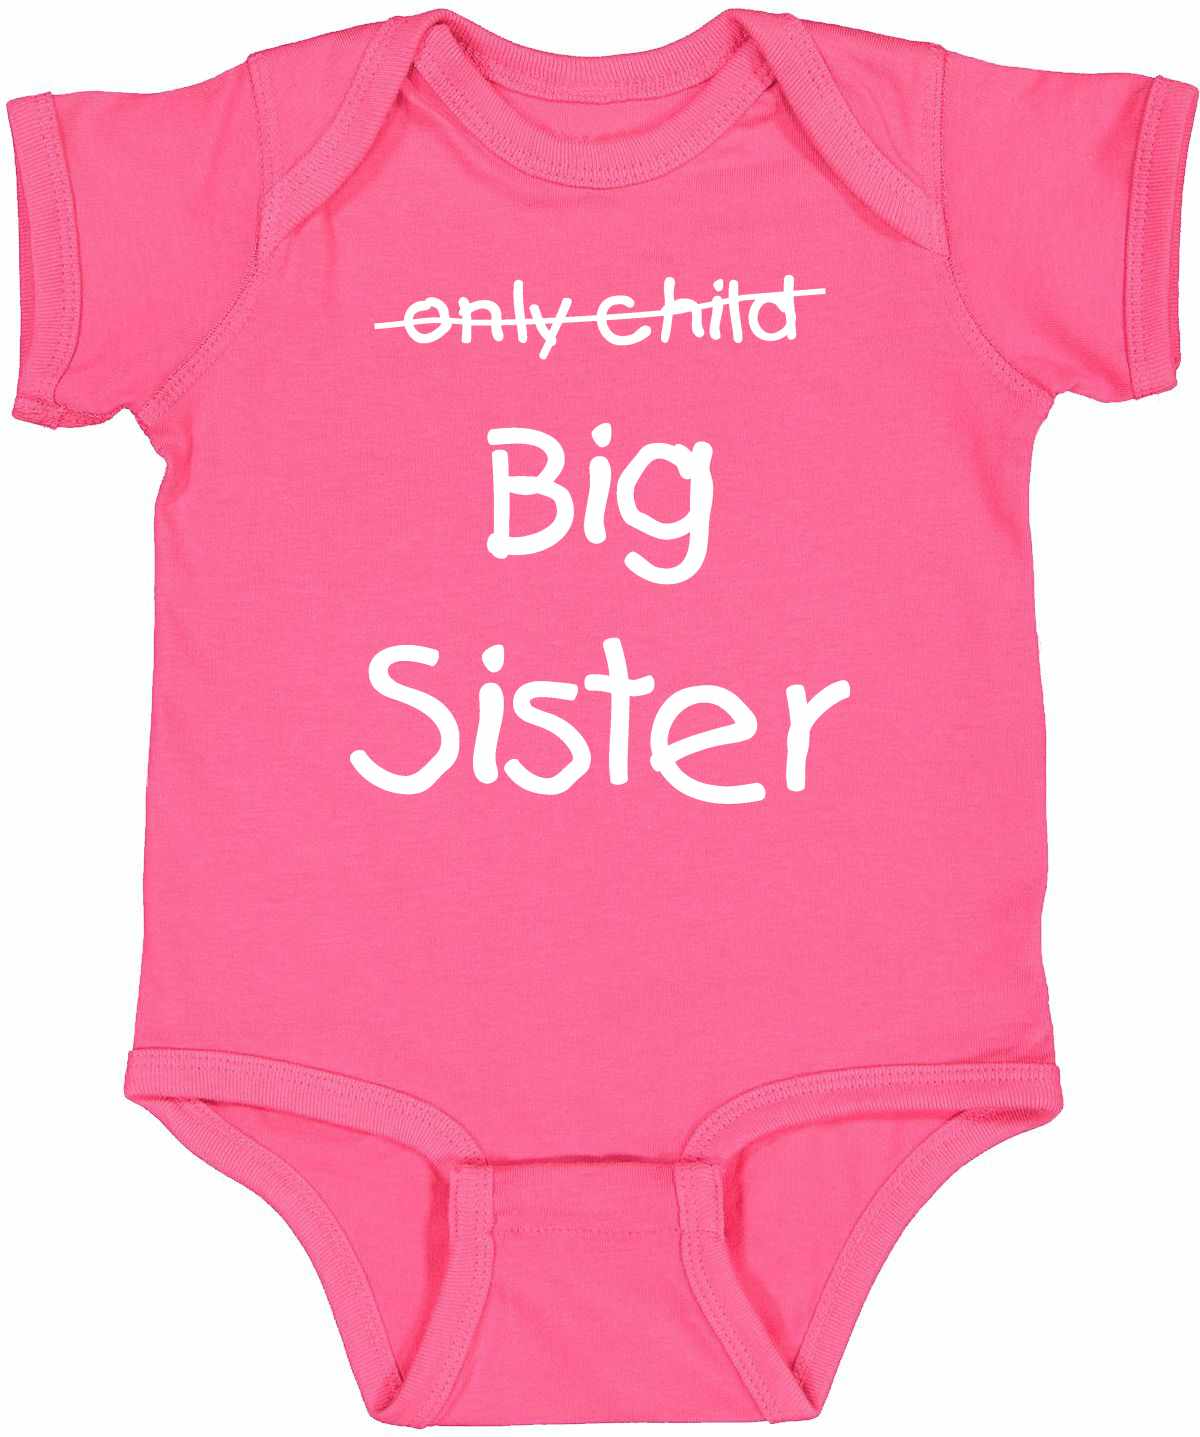 Only Child BIG SISTER on Infant BodySuit